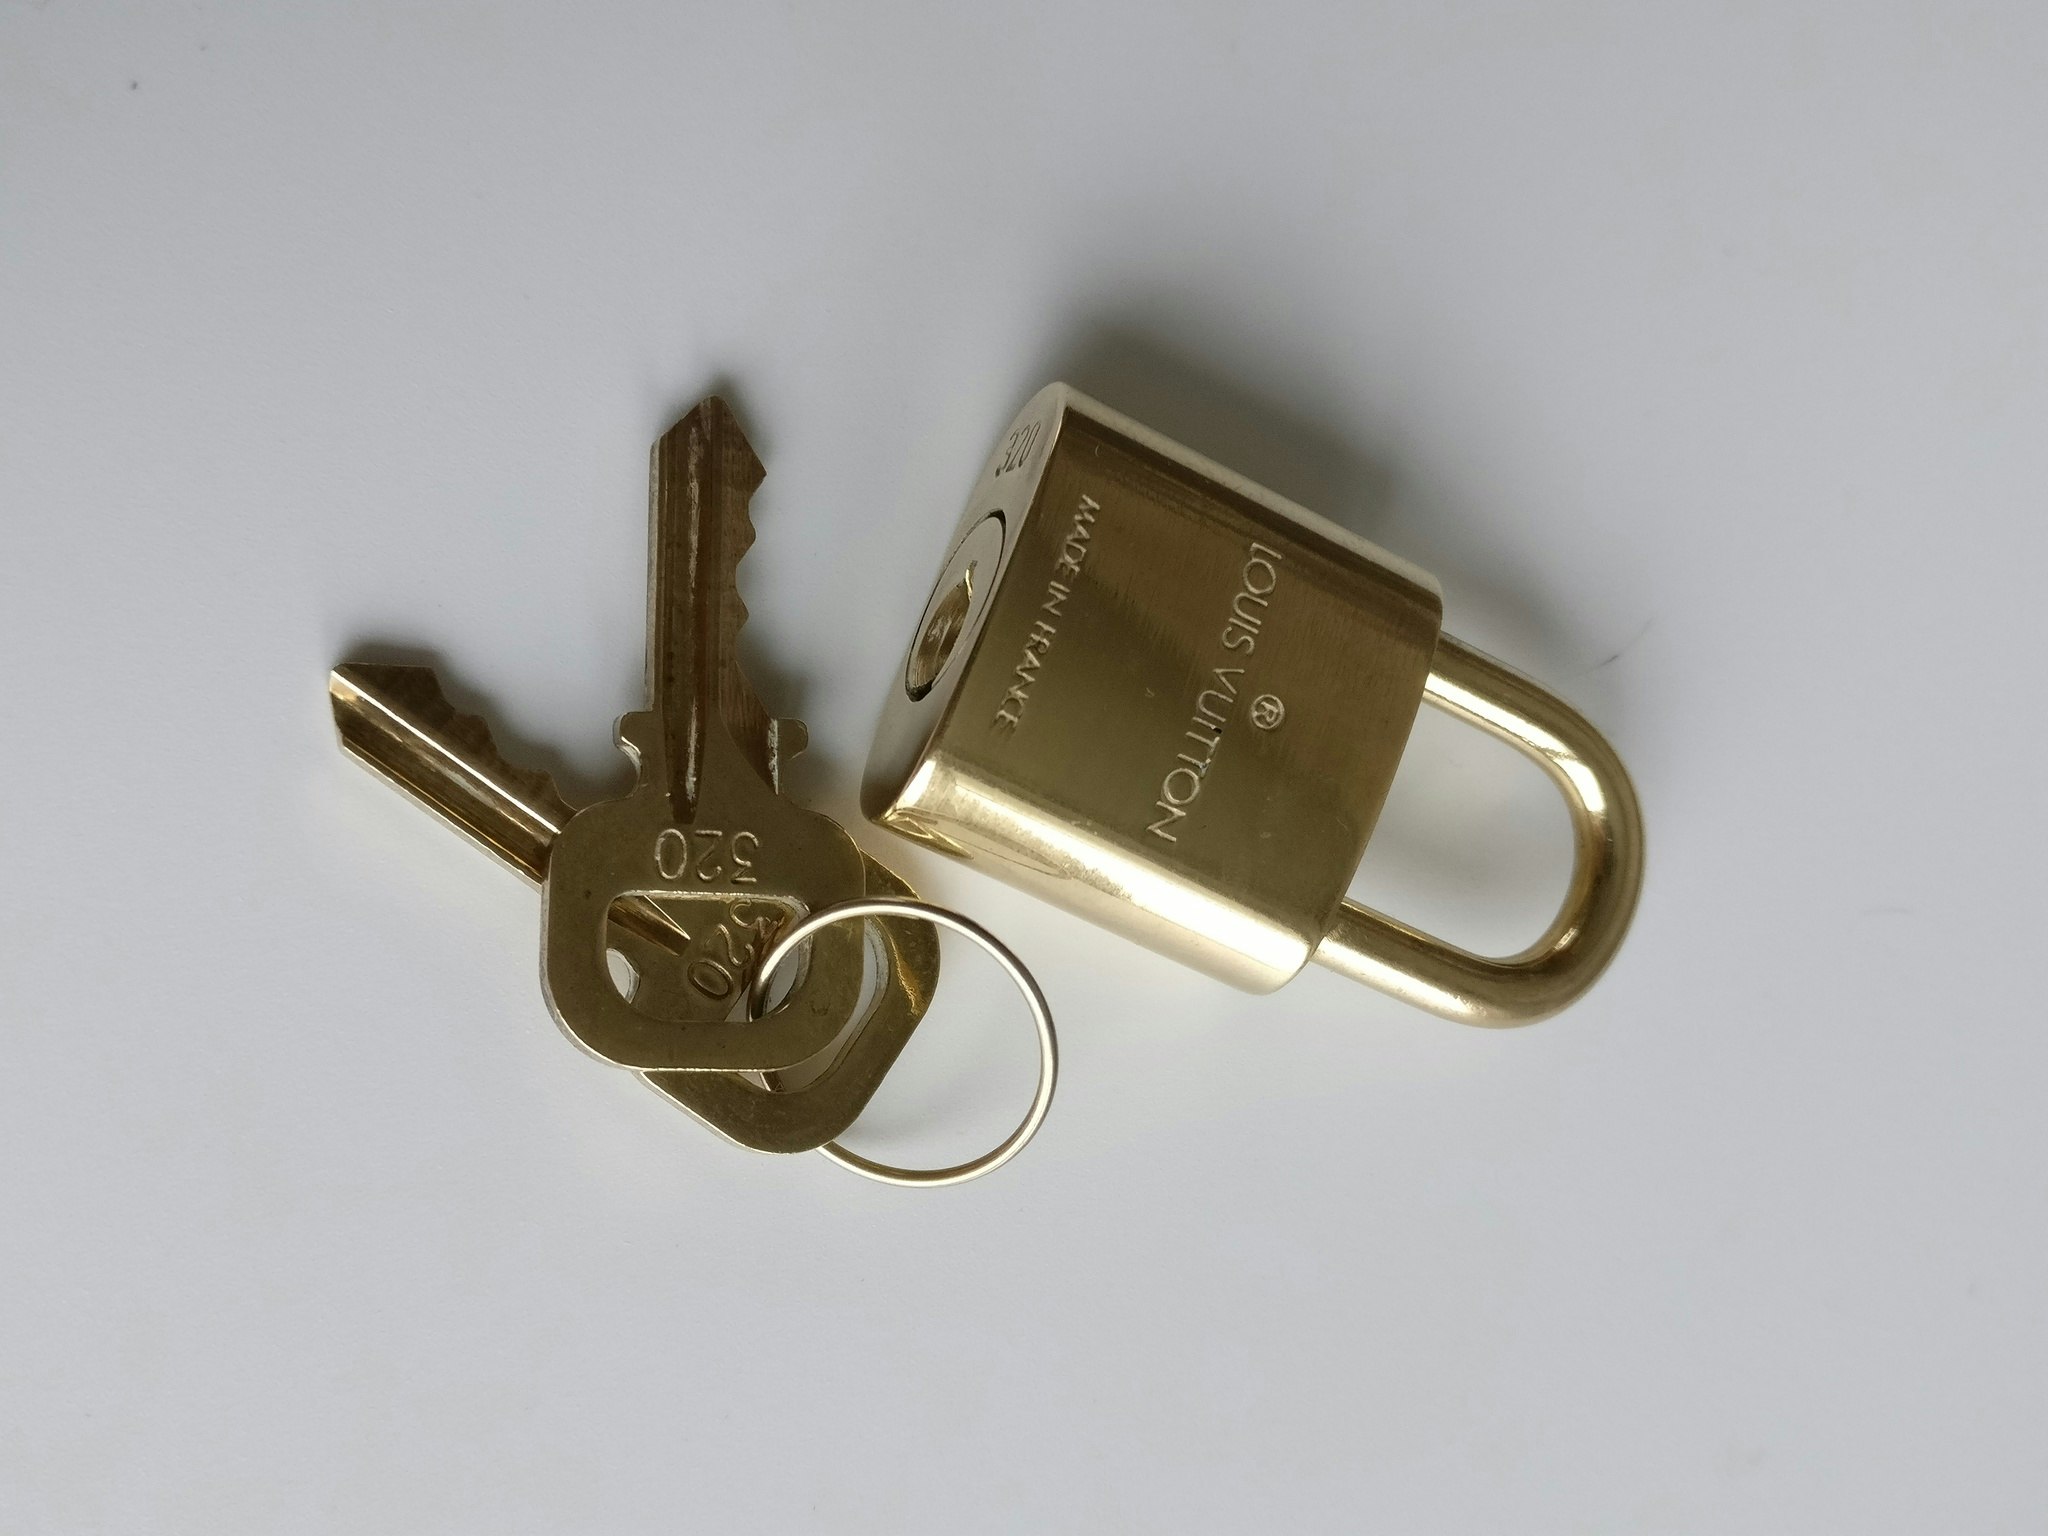 Louis Vuitton, Accessories, 32 Louis Vuitton 320 Lock Key Authentic